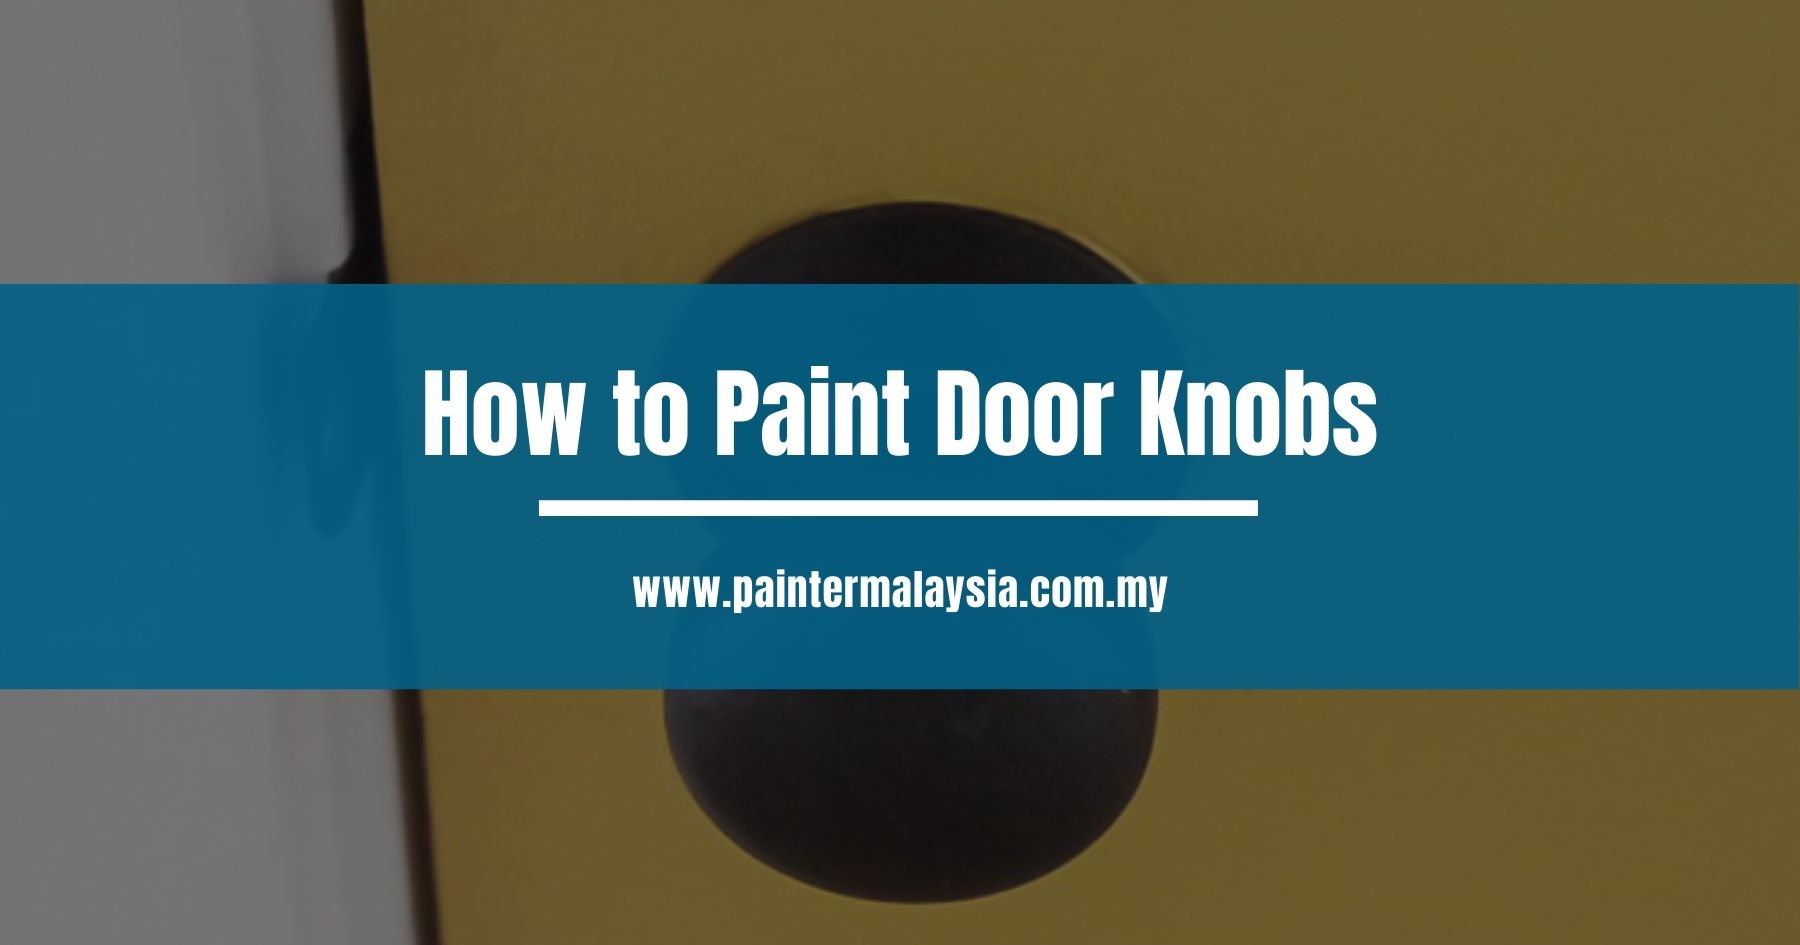 How to Paint Door Knobs